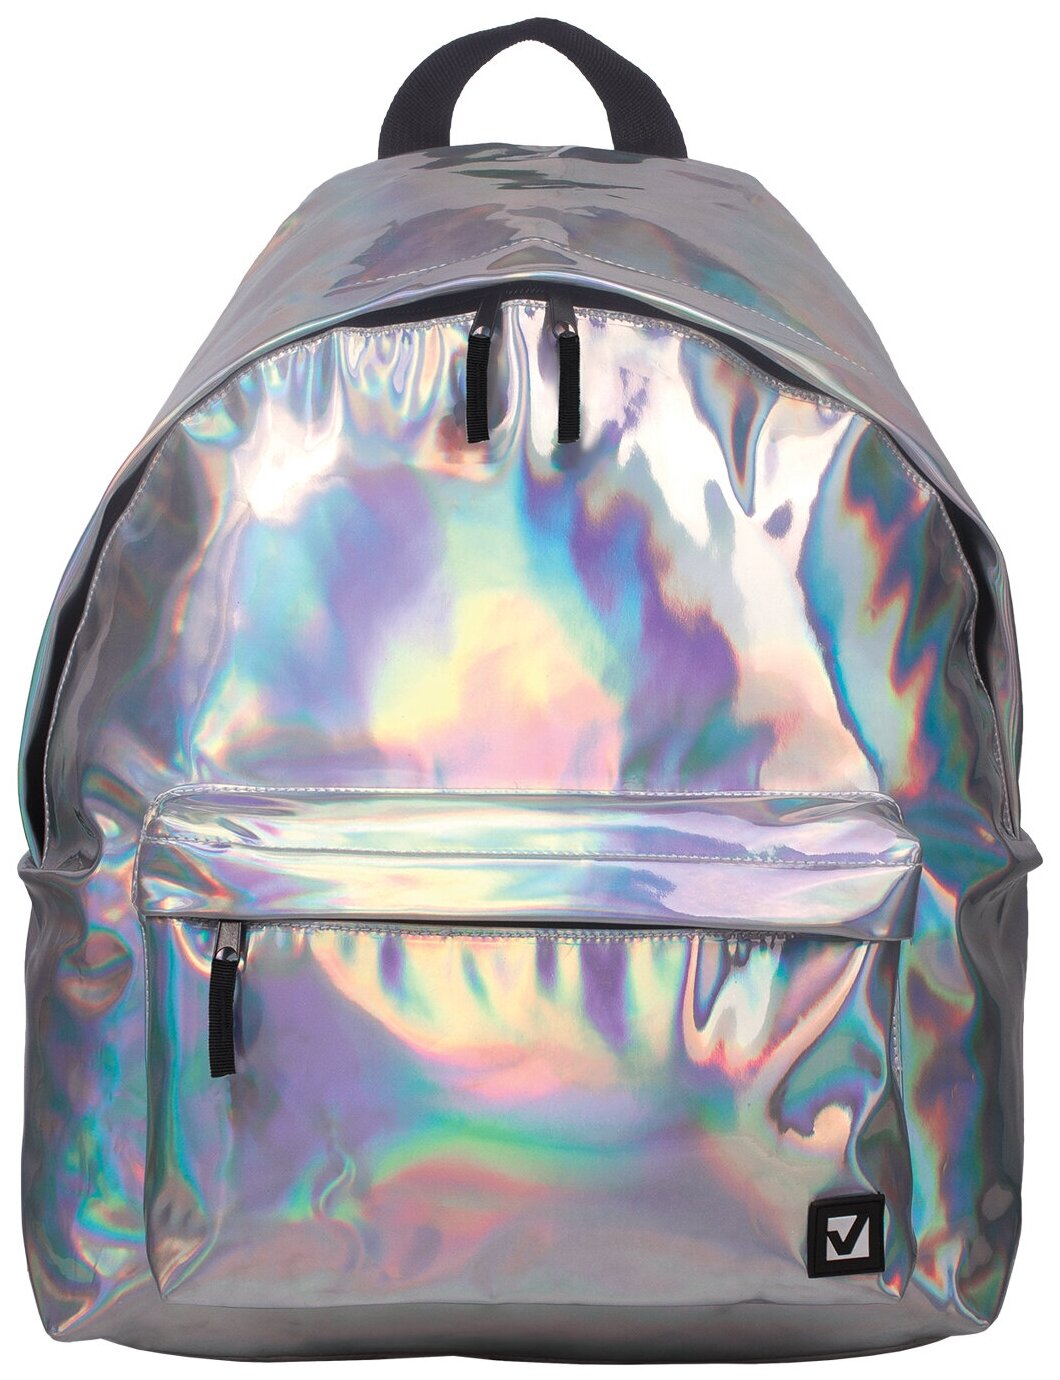 Рюкзак BRAUBERG(брауберг) универсальный, сити-формат, цвет серебро, Винтаж, 20 литров, 226421